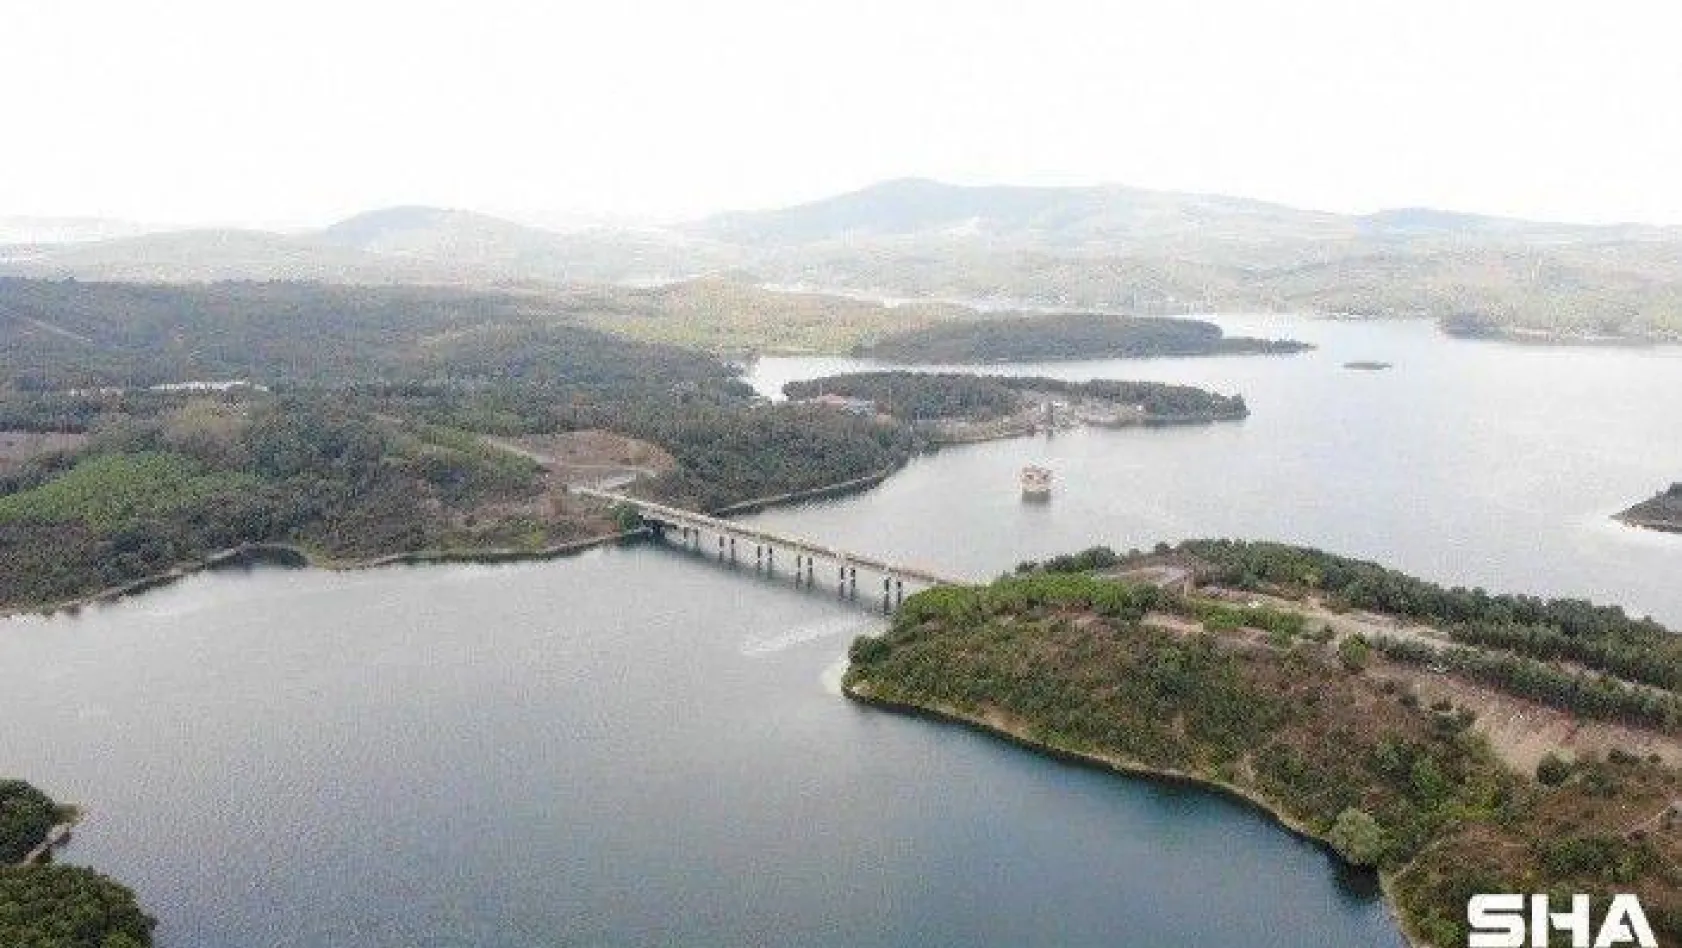 İstanbul barajlarında su seviyesi yüzde 60'ın altına indi